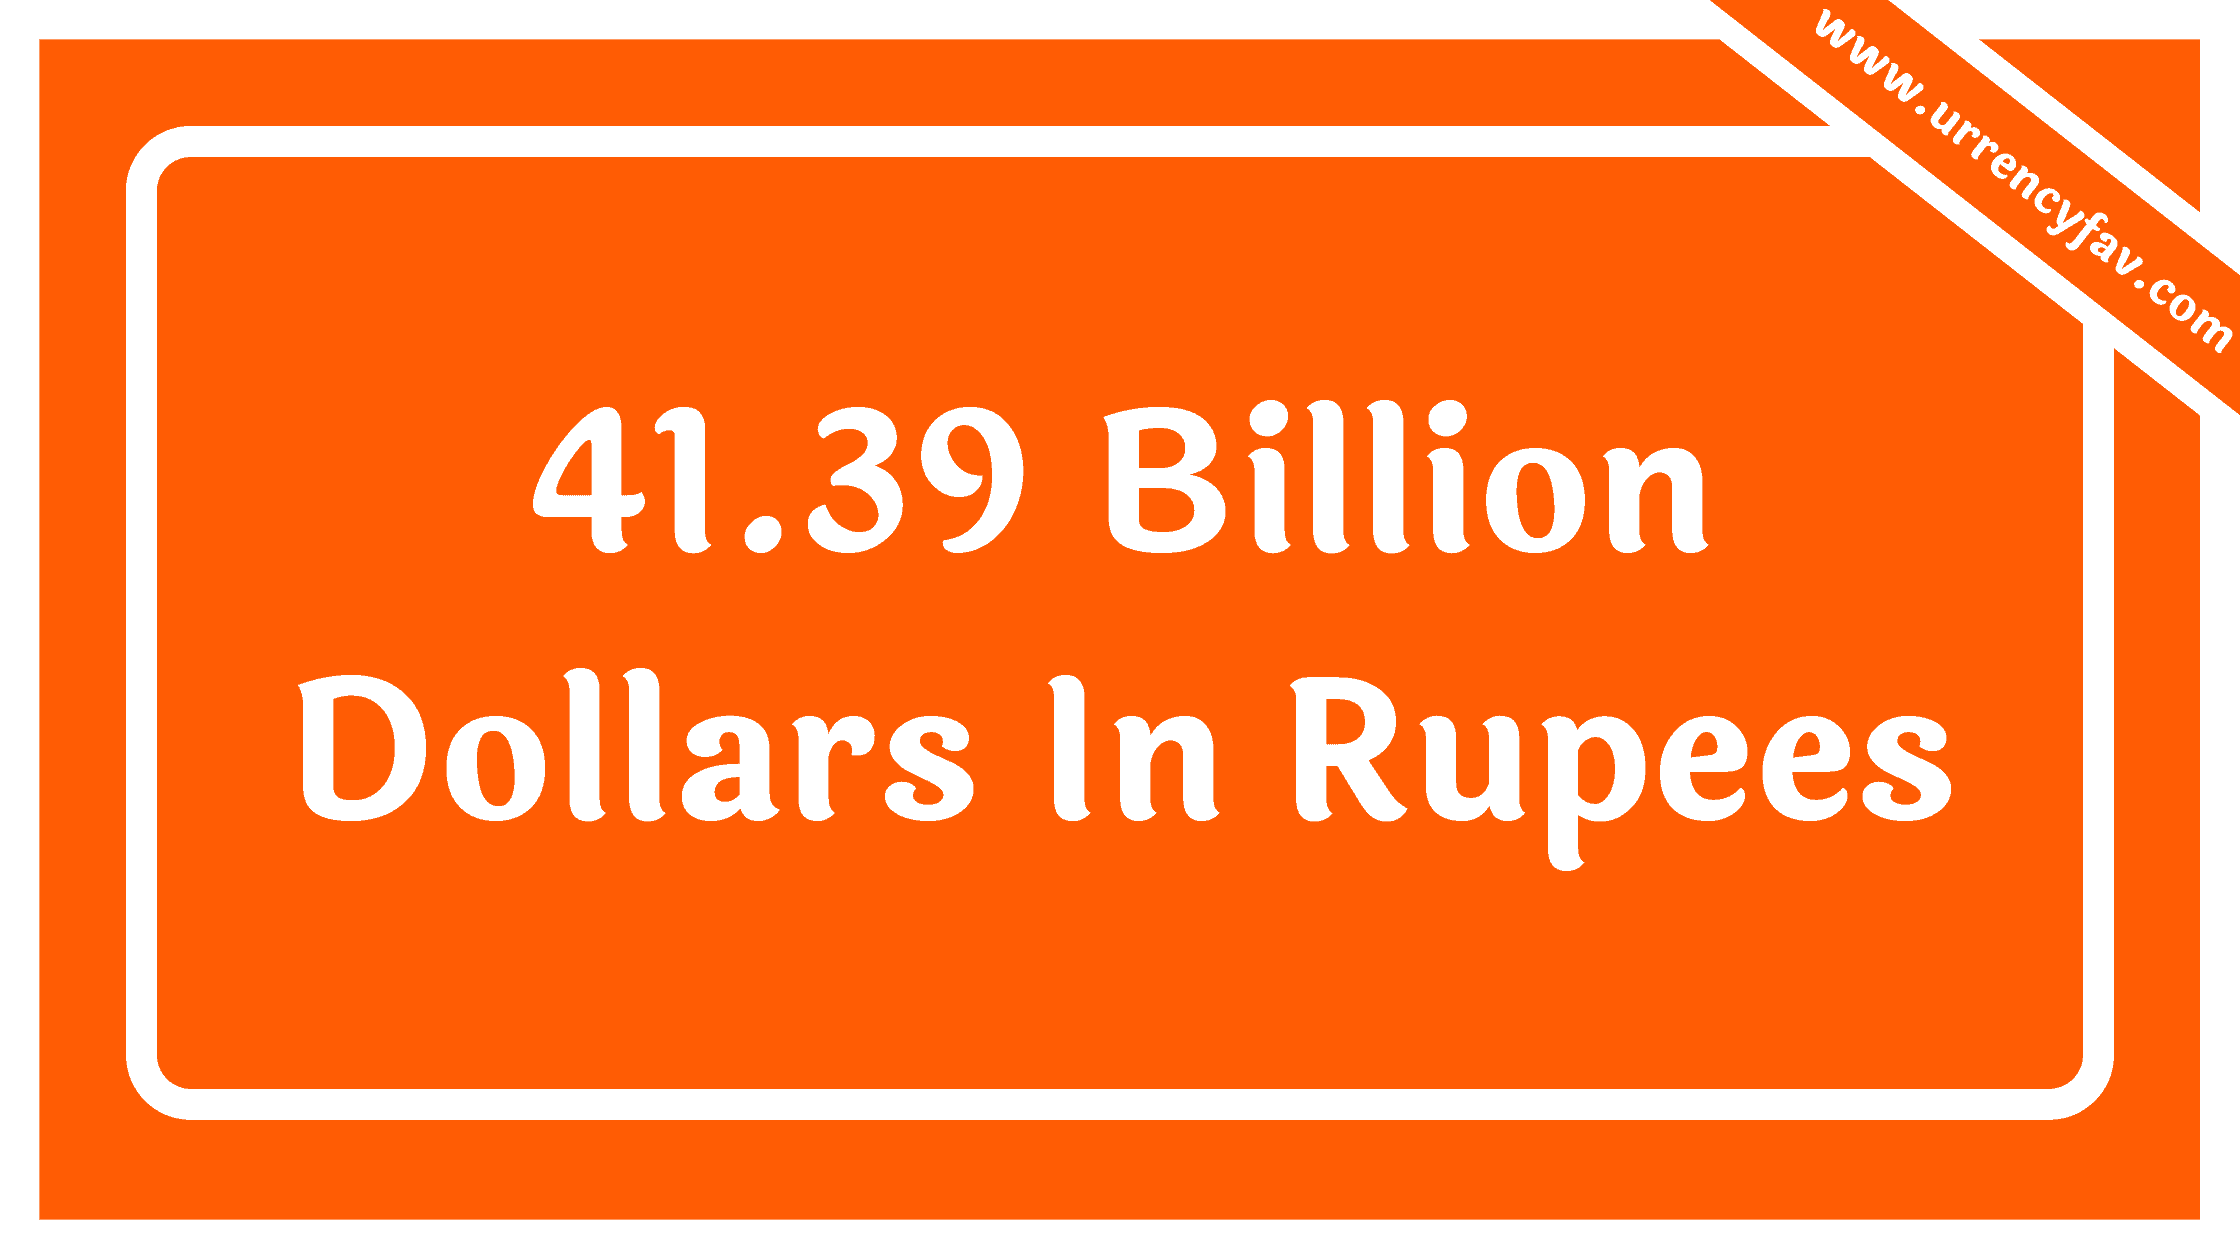 41.39 Billion Dollars In Rupees